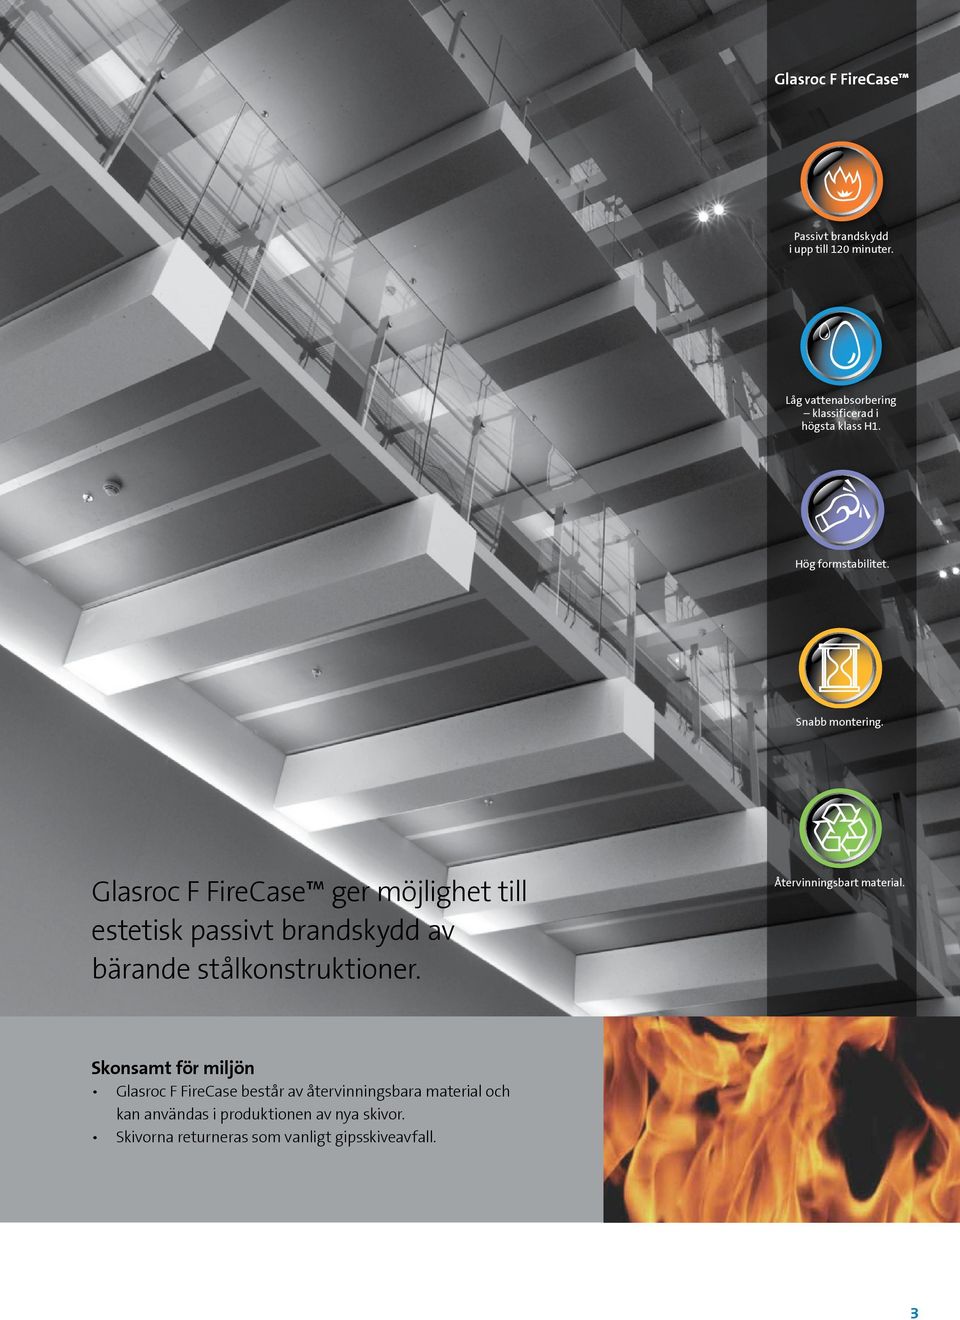 Glasroc F FireCase ger möjlighet till estetisk passivt brandskydd av bärande stålkonstruktioner.